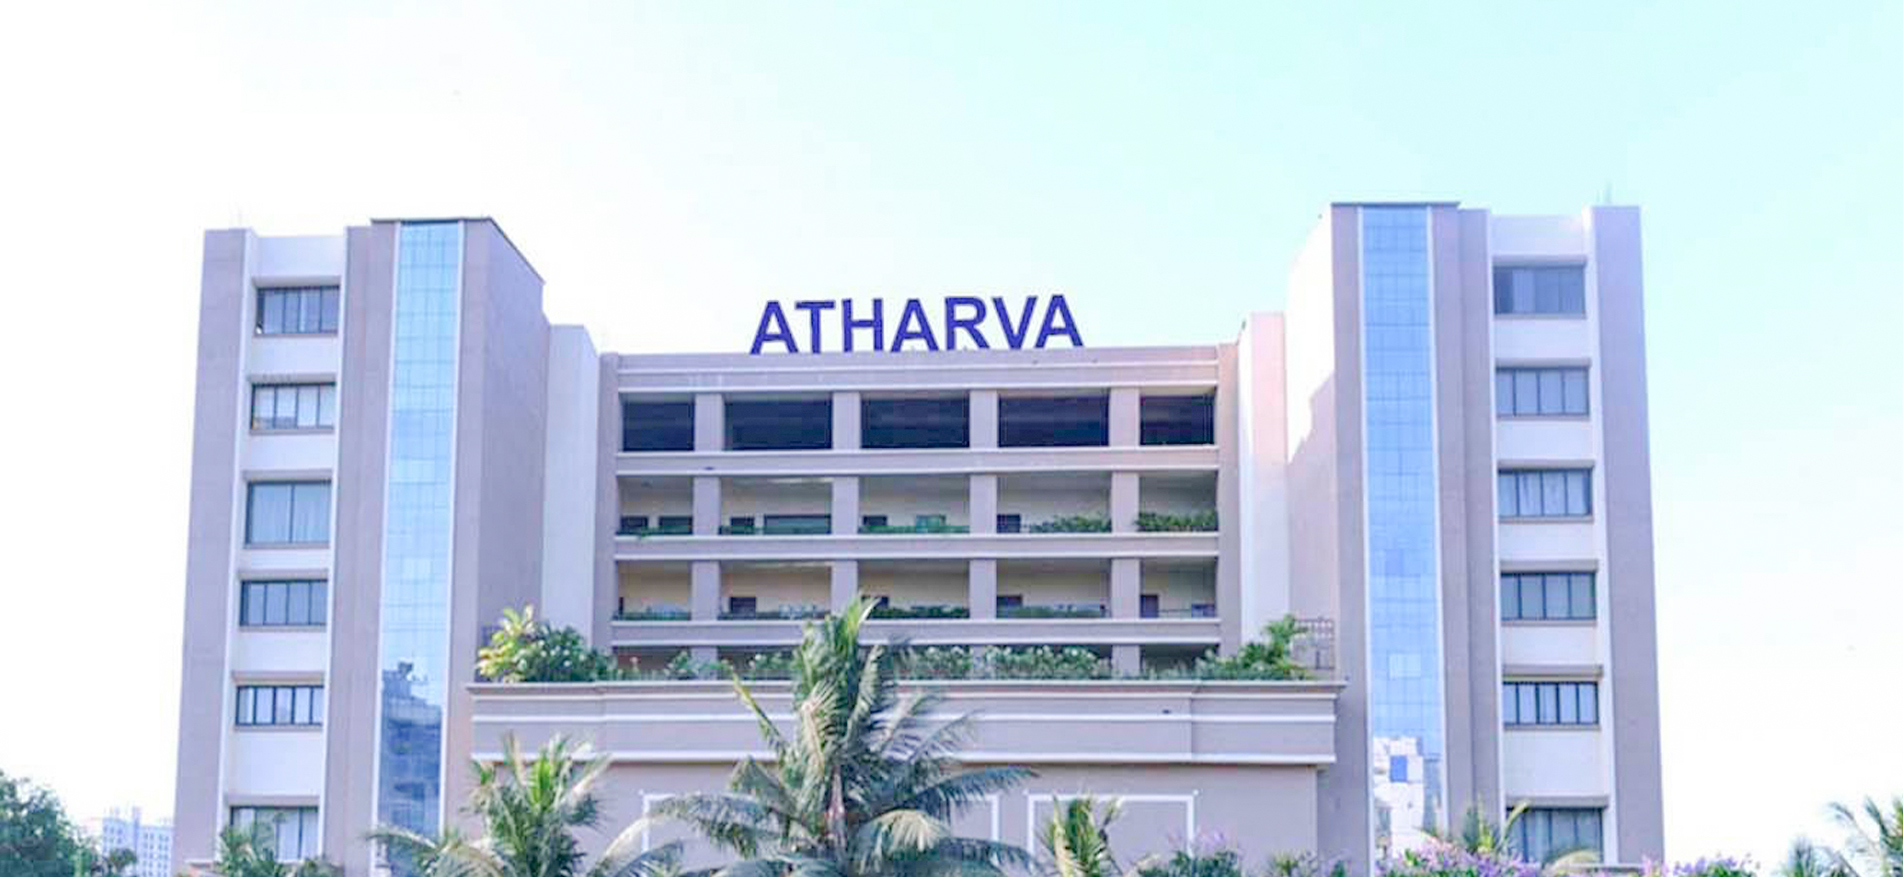 Atharva Institute of Management Studies